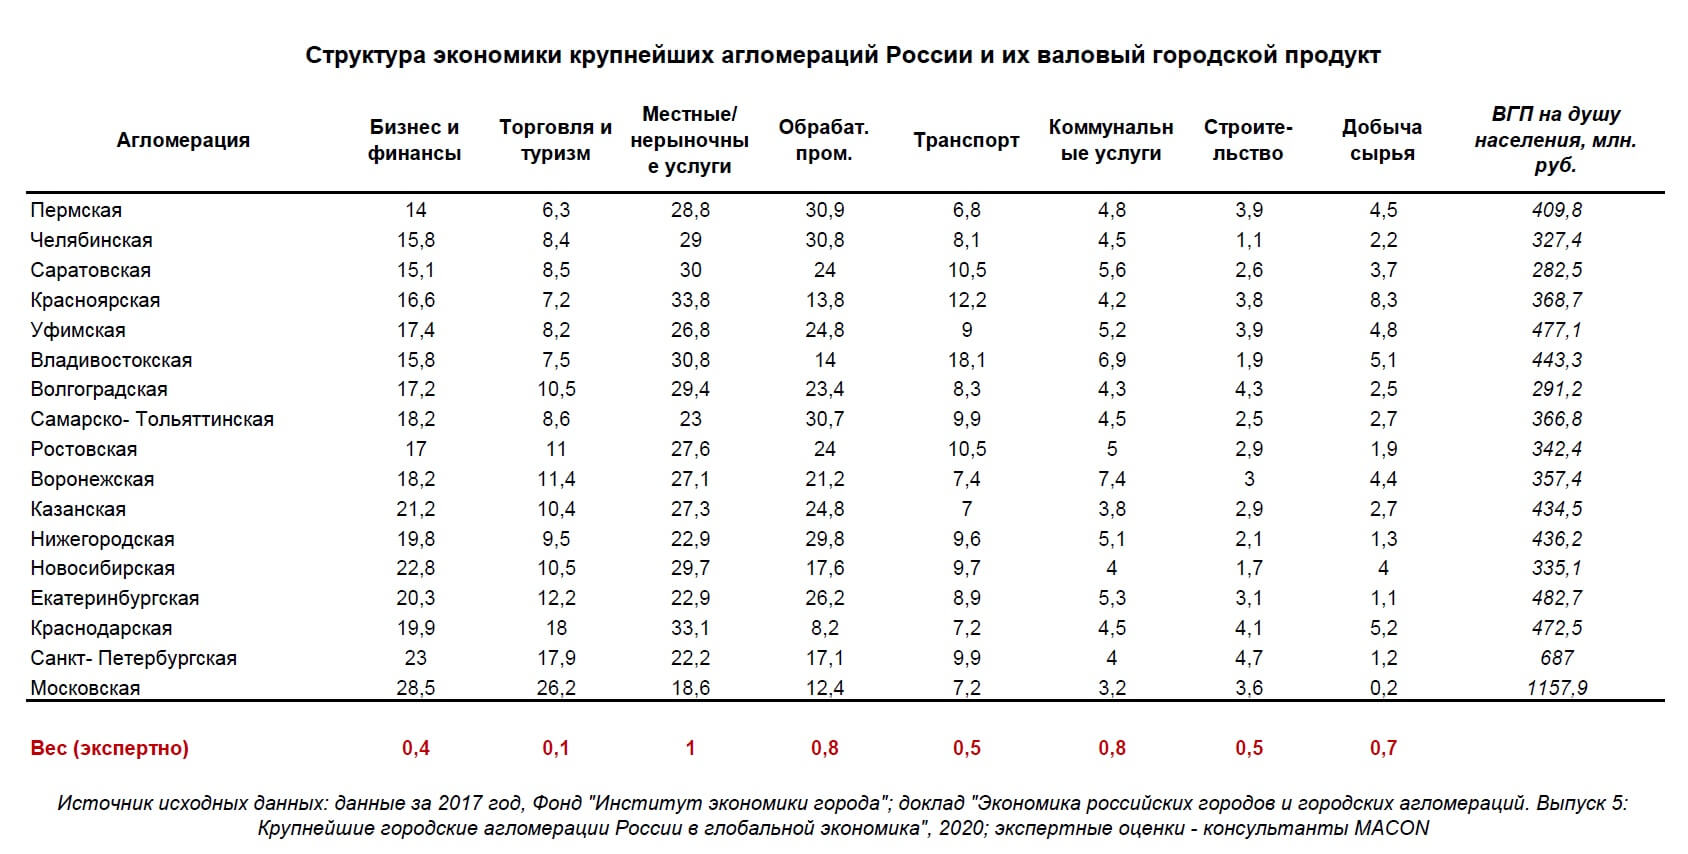 Structura economiei și PIB-ul aglomerărilor rusești